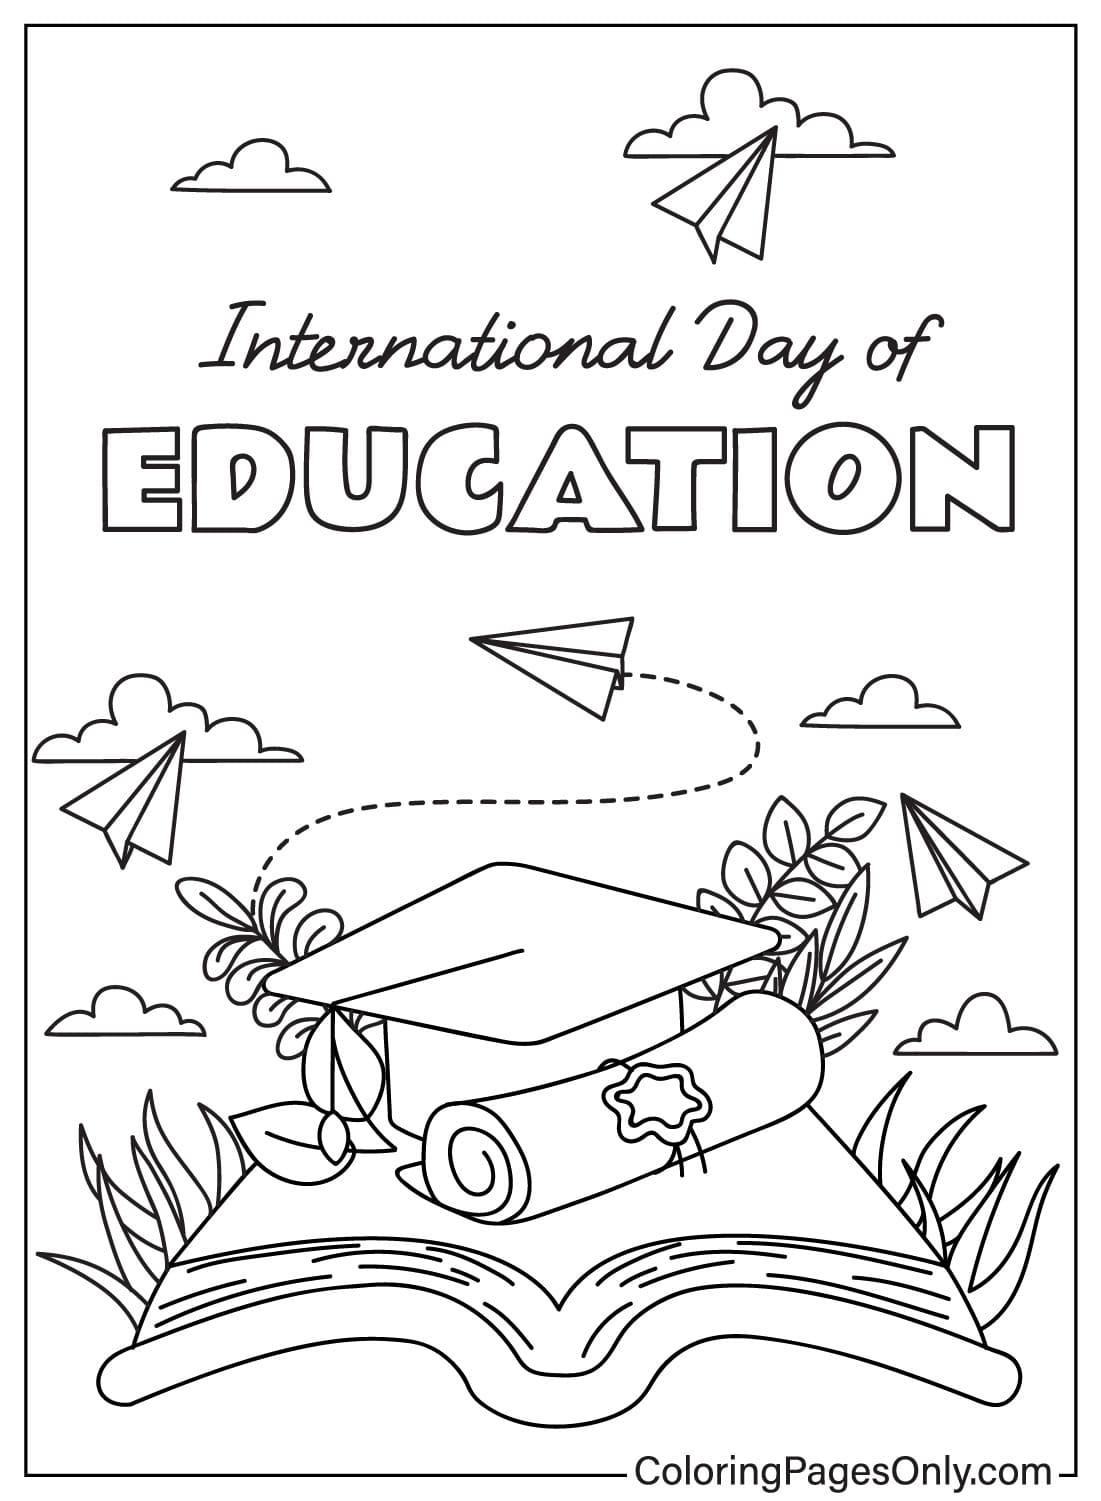 Imprima la página para colorear del Día Internacional de la Educación del Día Internacional de la Educación